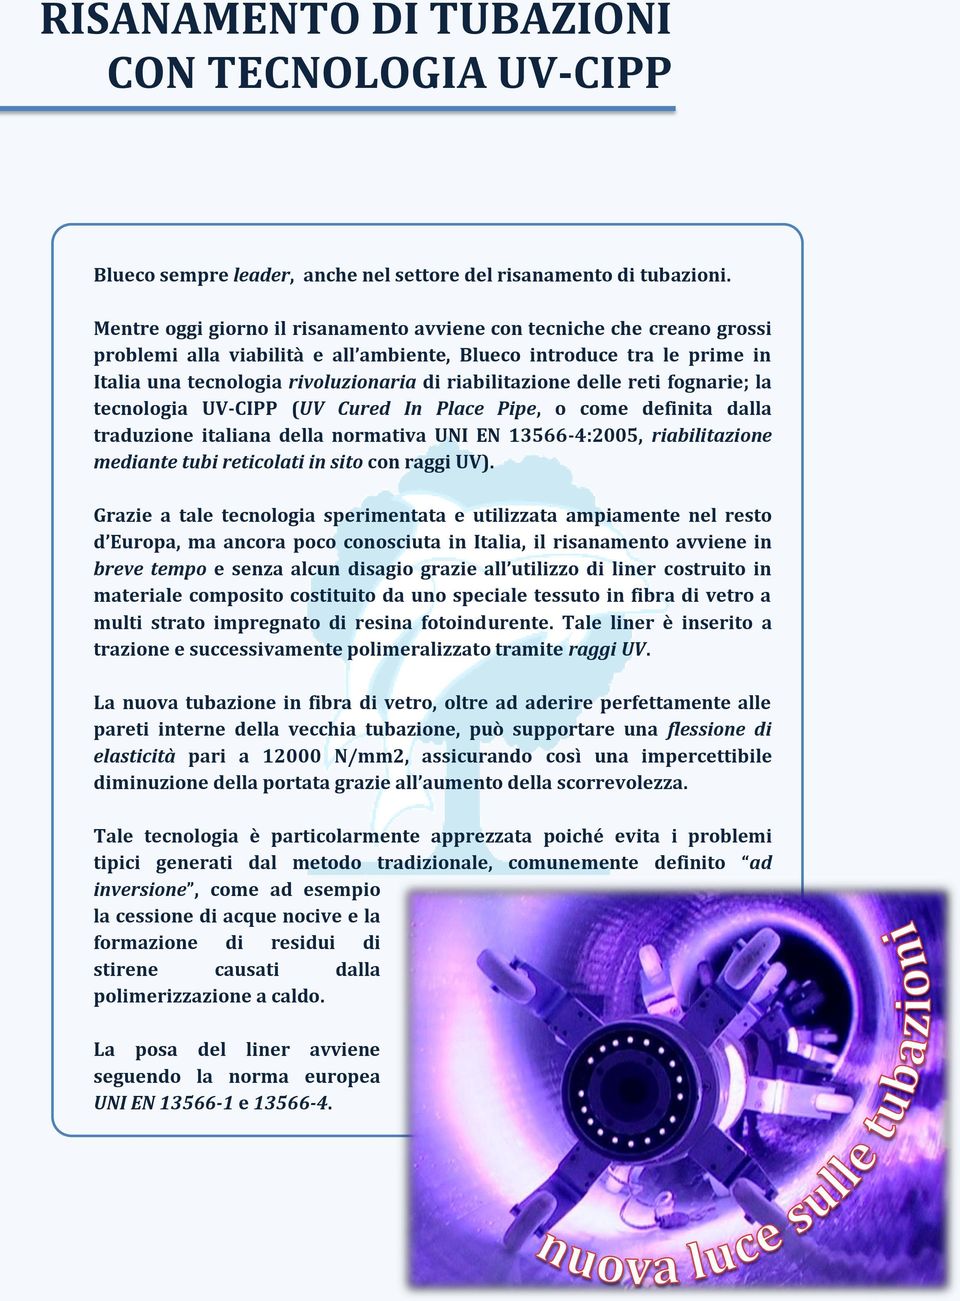 riabilitazione delle reti fognarie; la tecnologia UV-CIPP (UV Cured In Place Pipe, o come definita dalla traduzione italiana della normativa UNI EN 13566-4:2005, riabilitazione mediante tubi